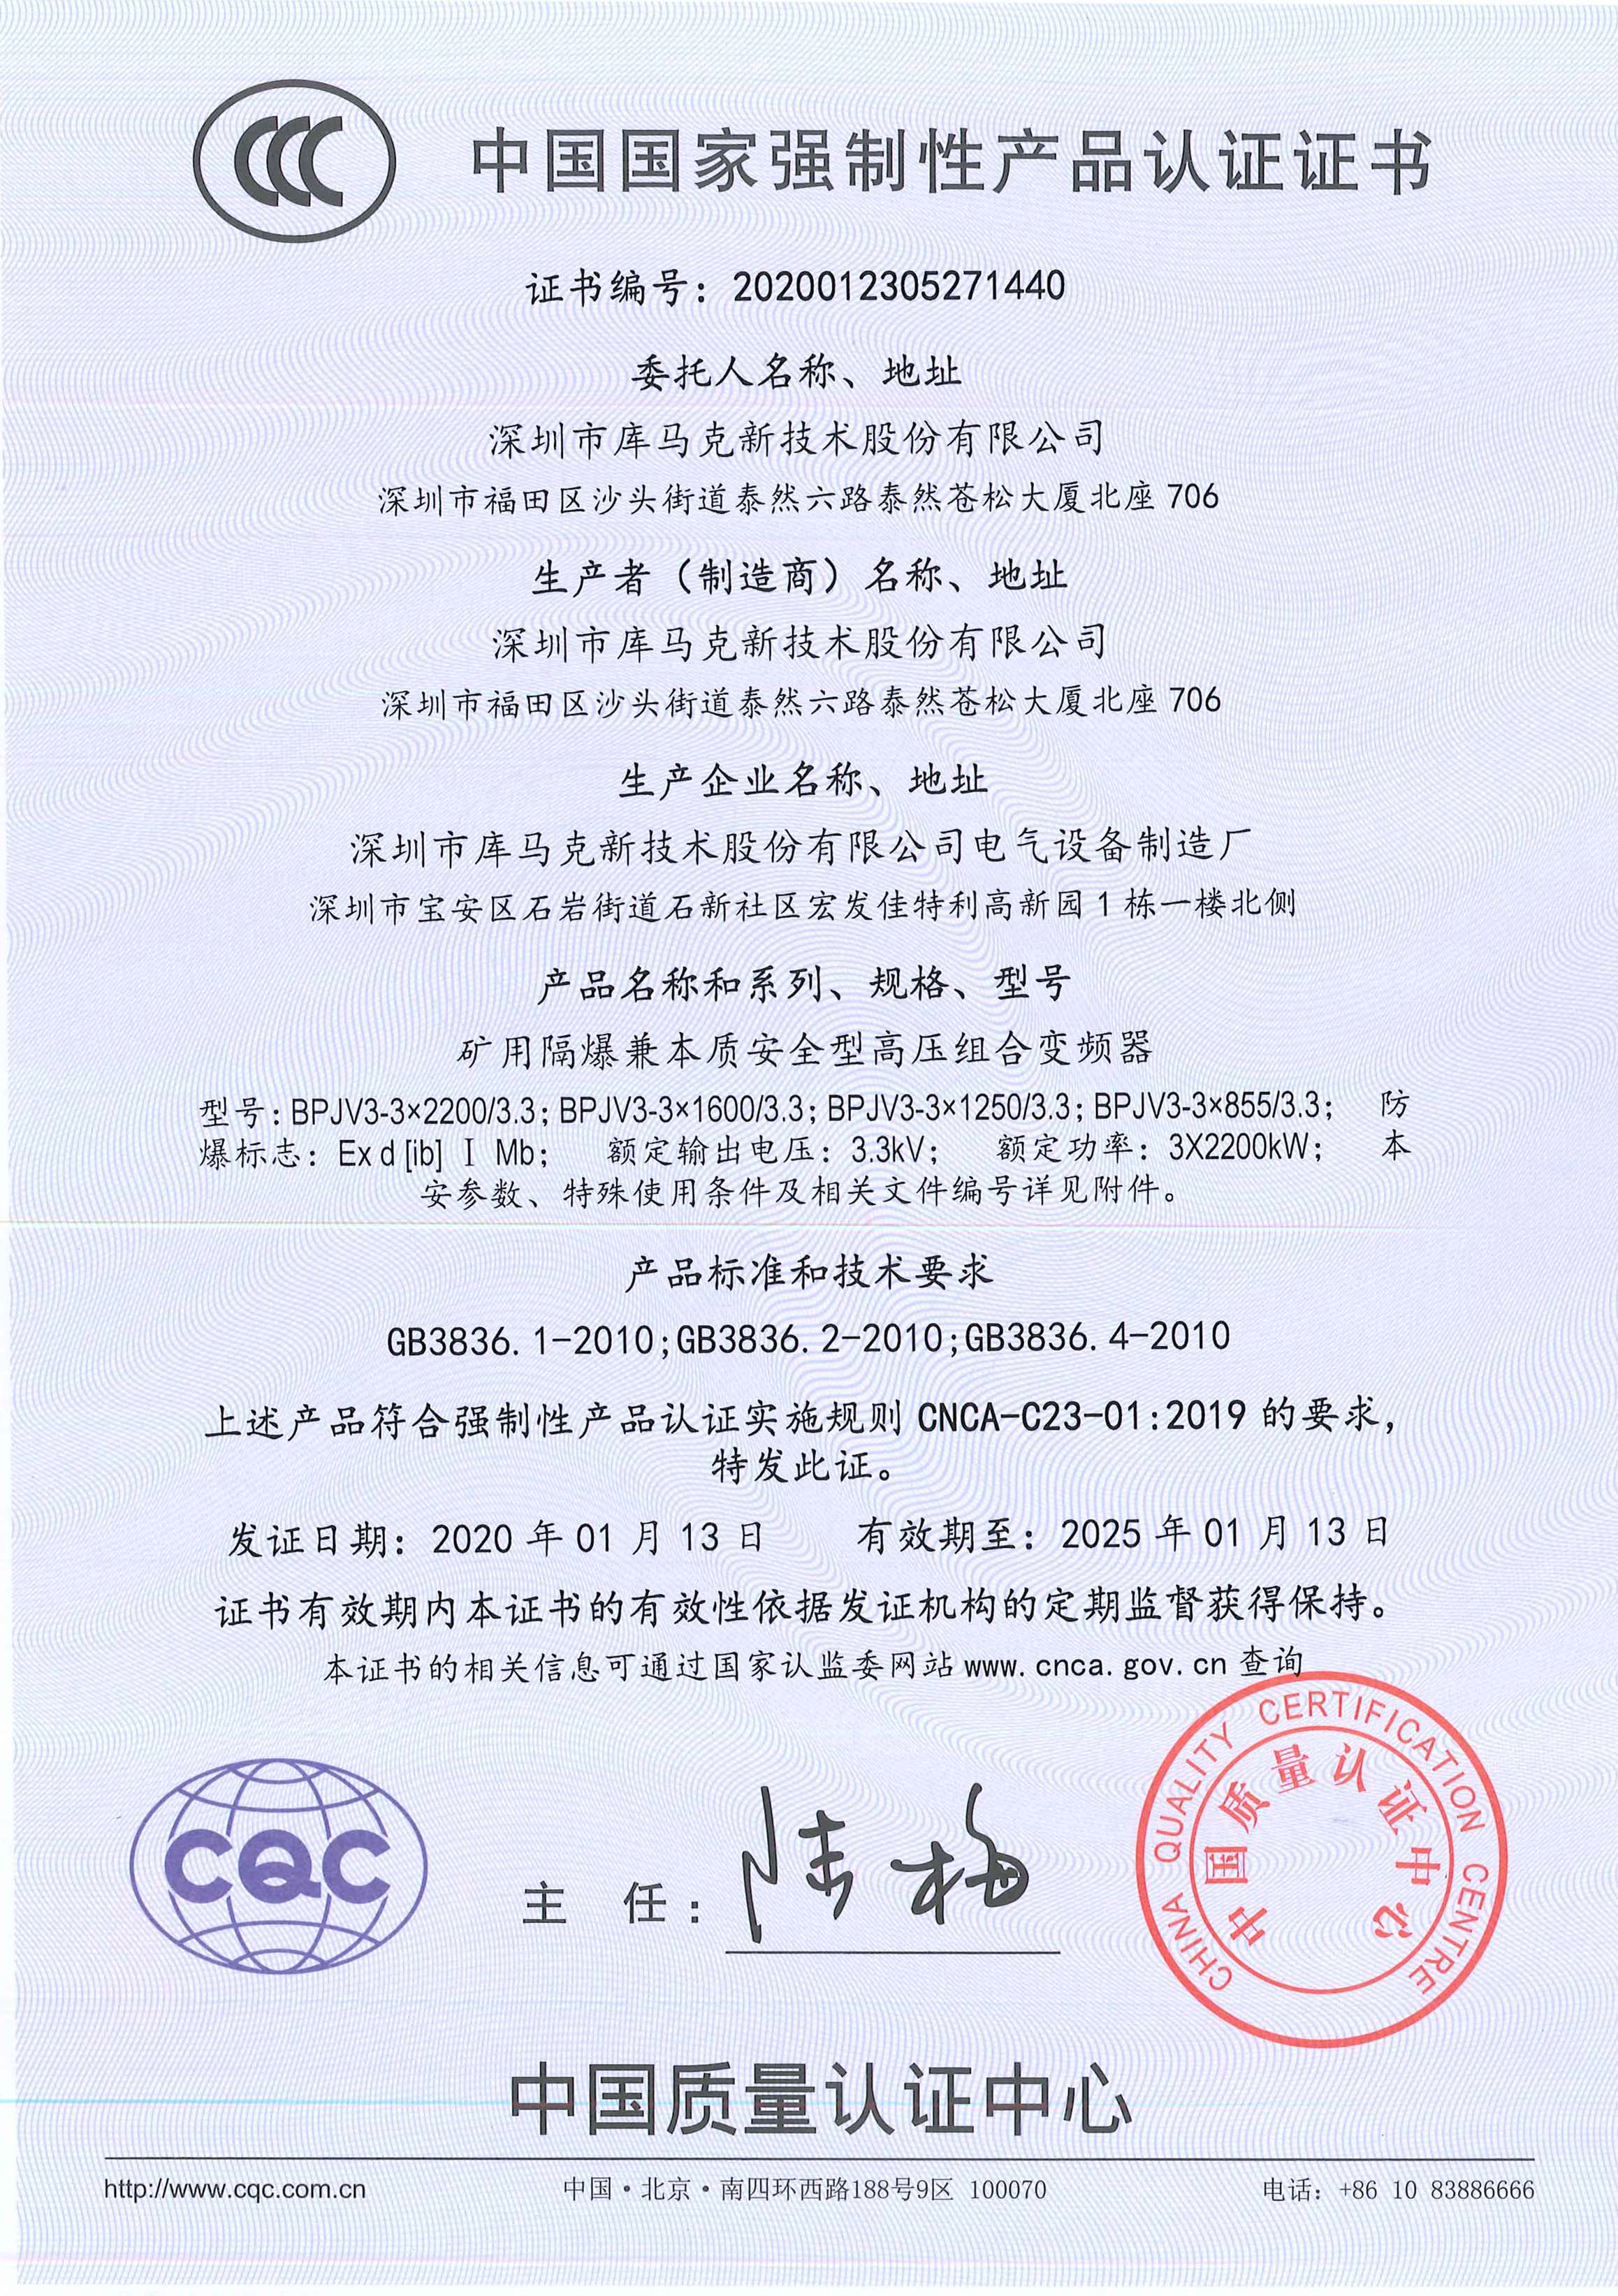 库马克防爆高压变频器取得国内首批CCC证书